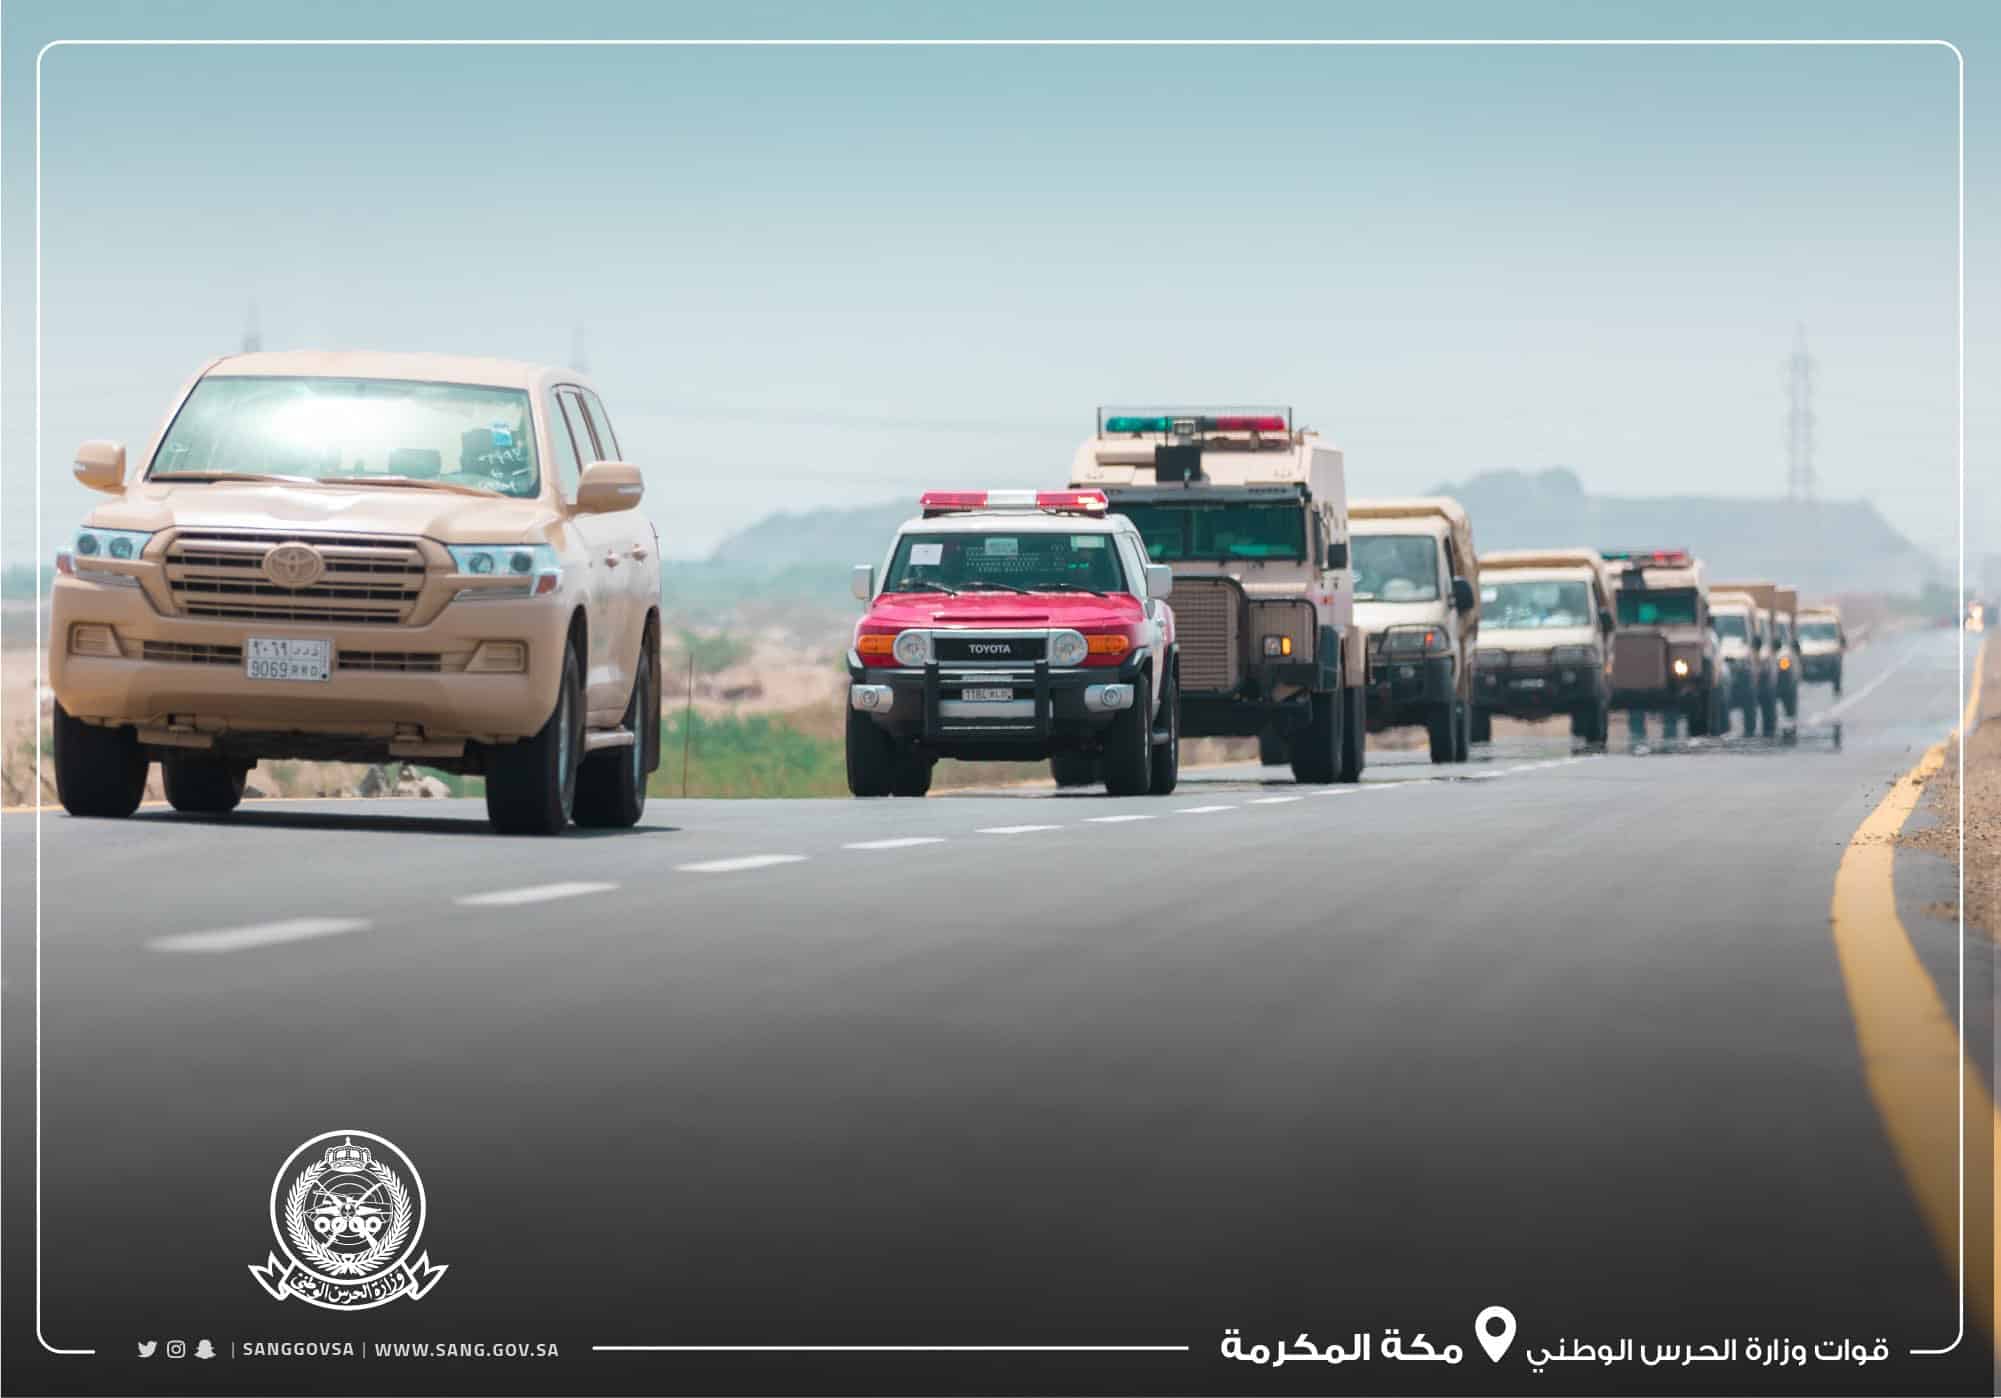 قوات تابعة للحرس الوطني تصل مكة للمساندة في تطبيق منع التجول